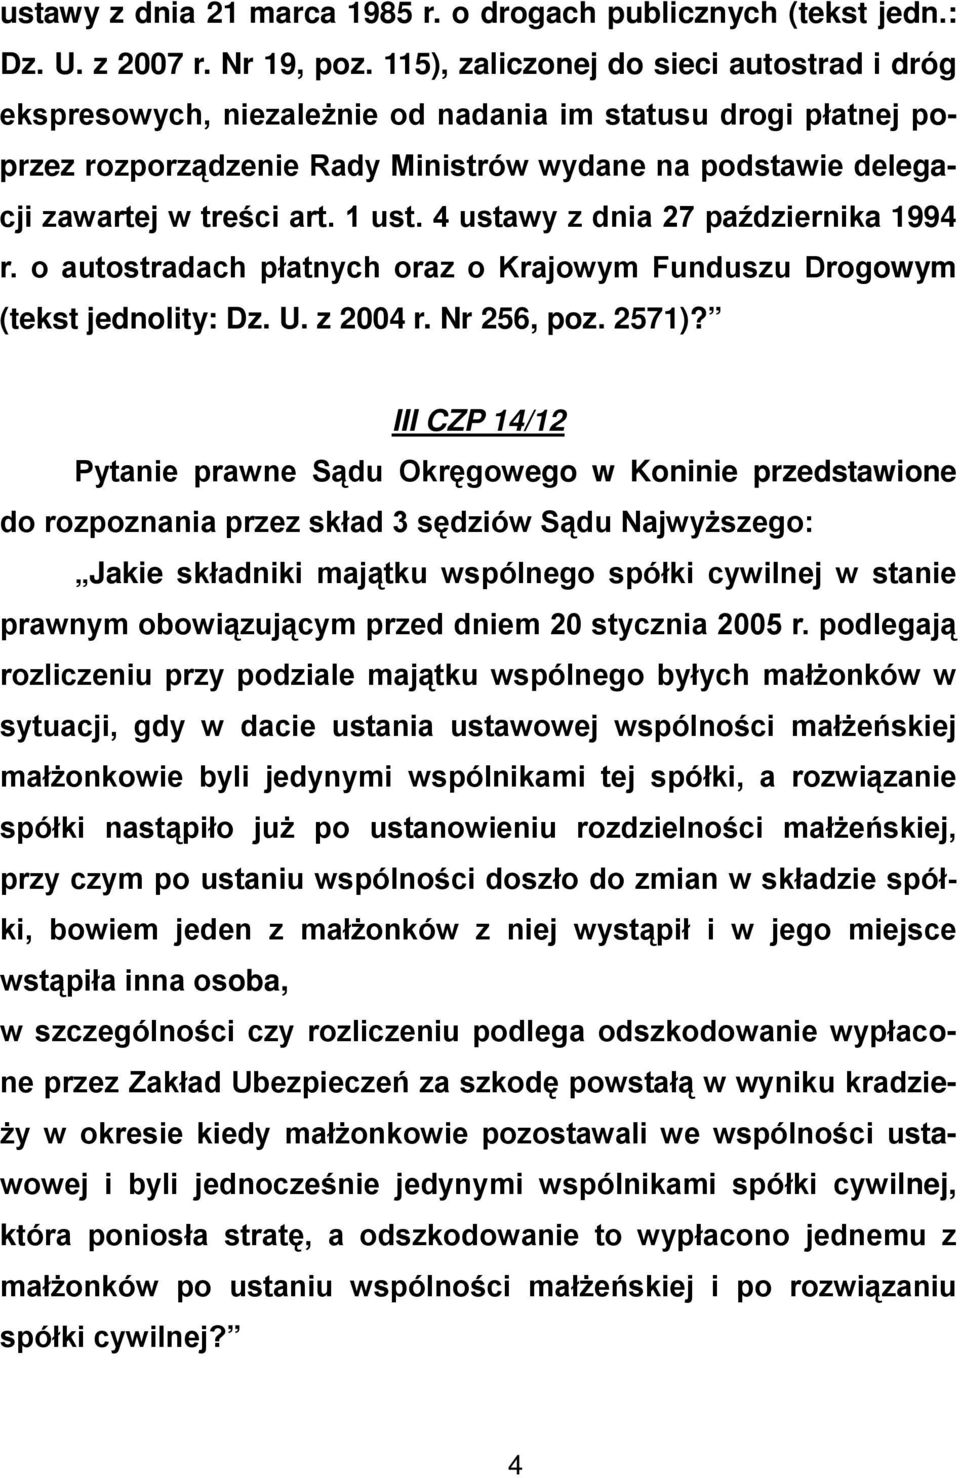 1 ust. 4 ustawy z dnia 27 października 1994 r. o autostradach płatnych oraz o Krajowym Funduszu Drogowym (tekst jednolity: Dz. U. z 2004 r. Nr 256, poz. 2571)?